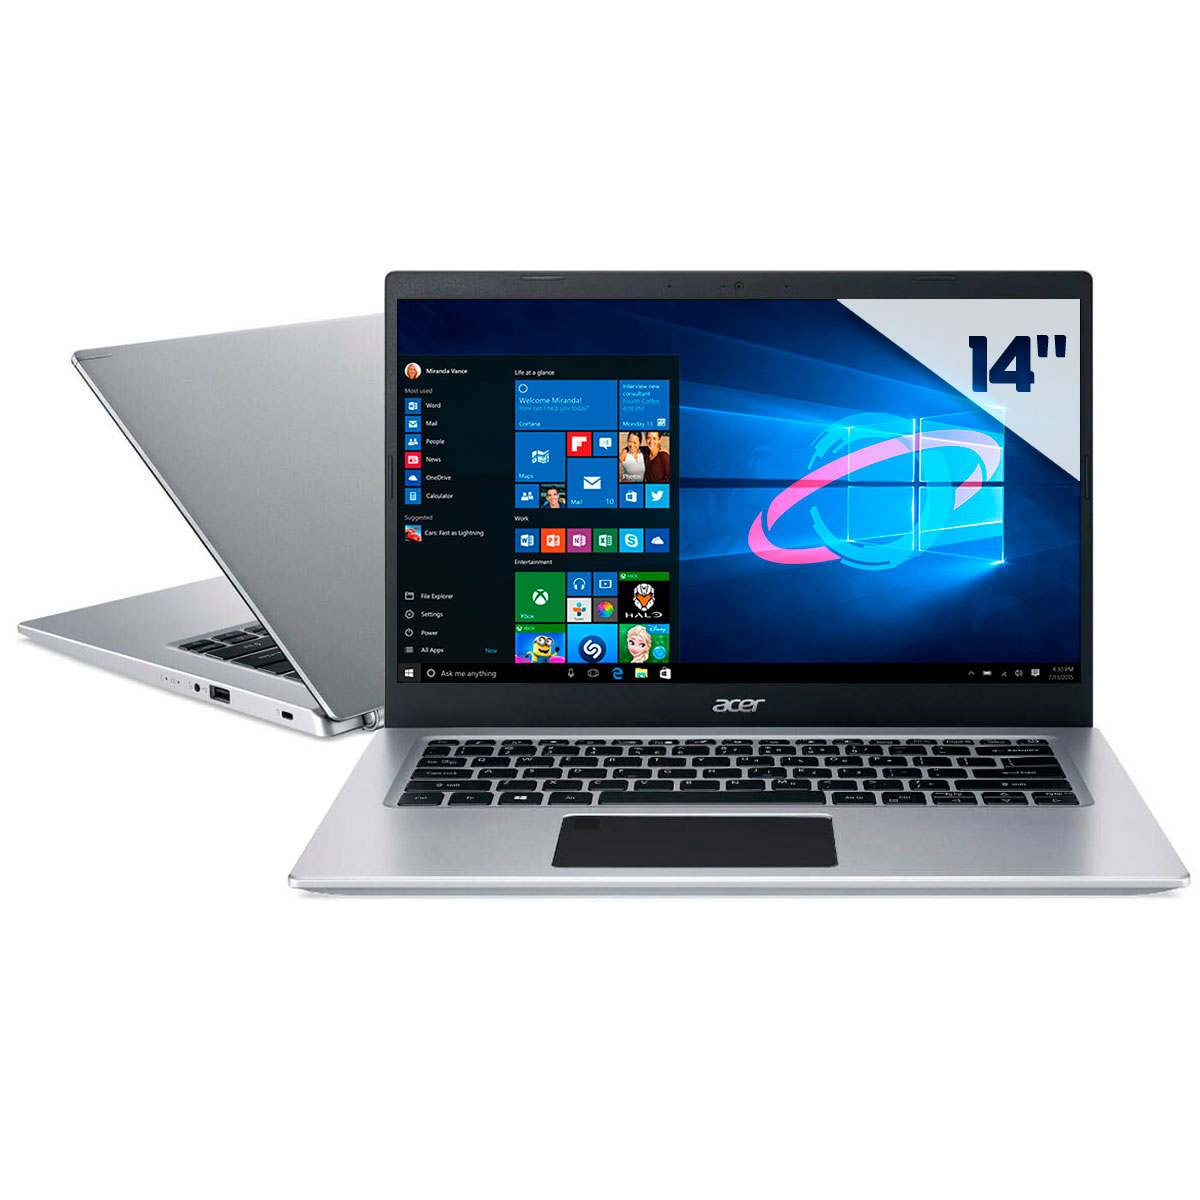 Notebook Acer Aspire A514-53-5239 - Intel i5 1035G1, RAM 12GB, SSD 256GB, Tela 14